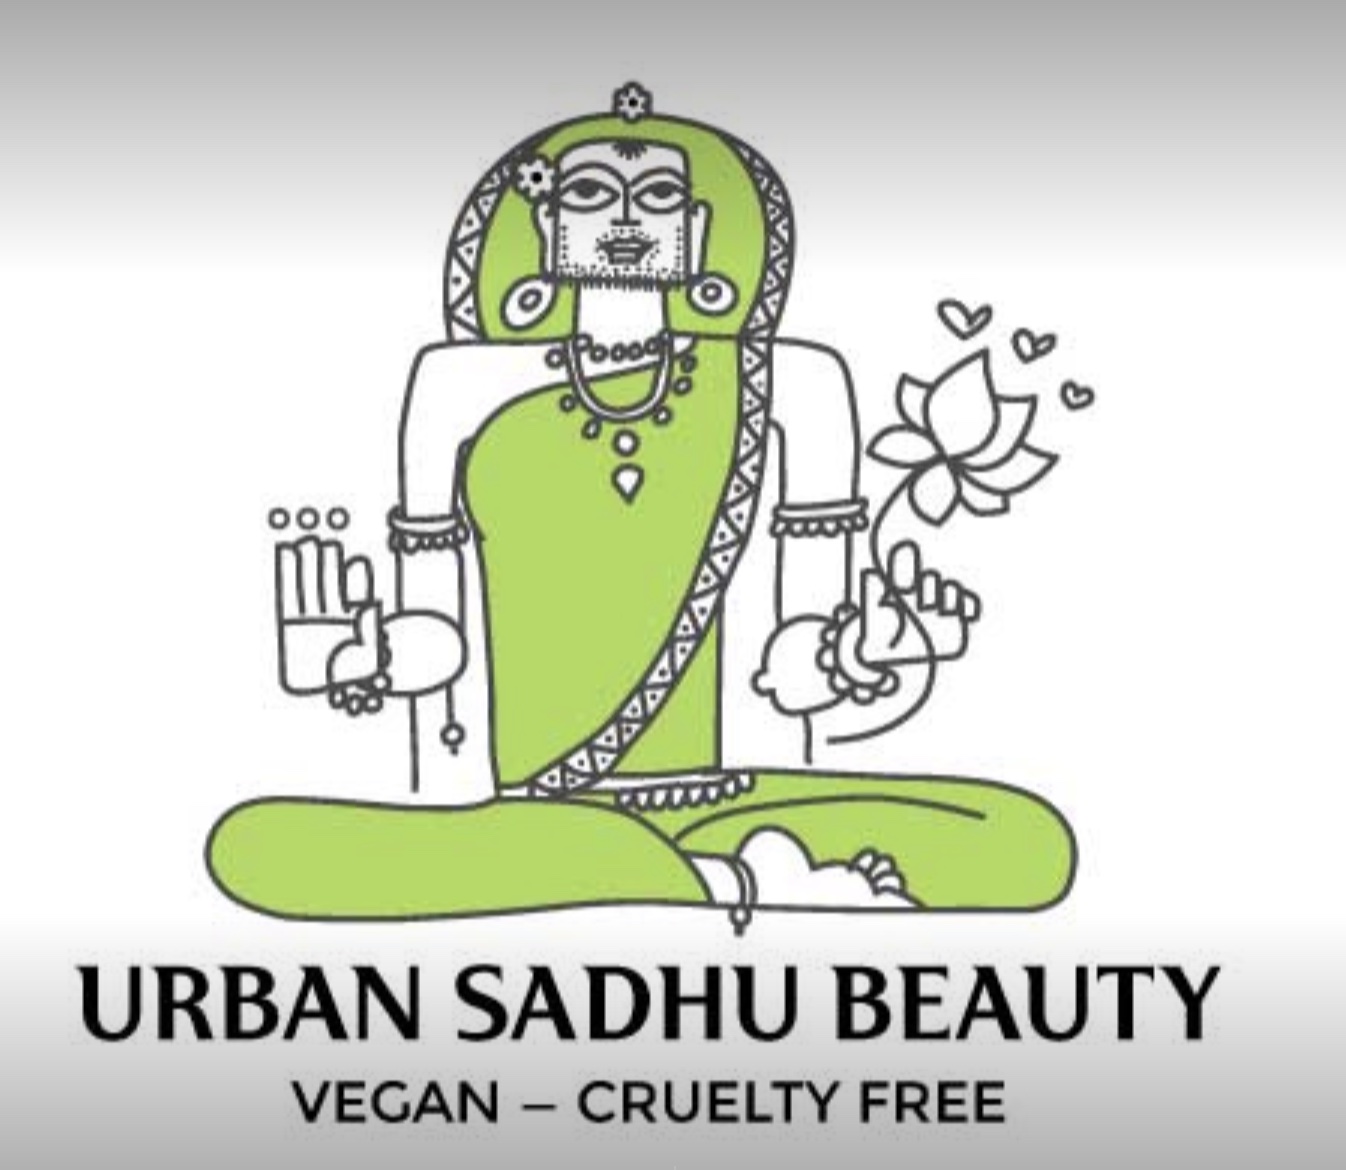 urban sadhu beauty logo.jpg